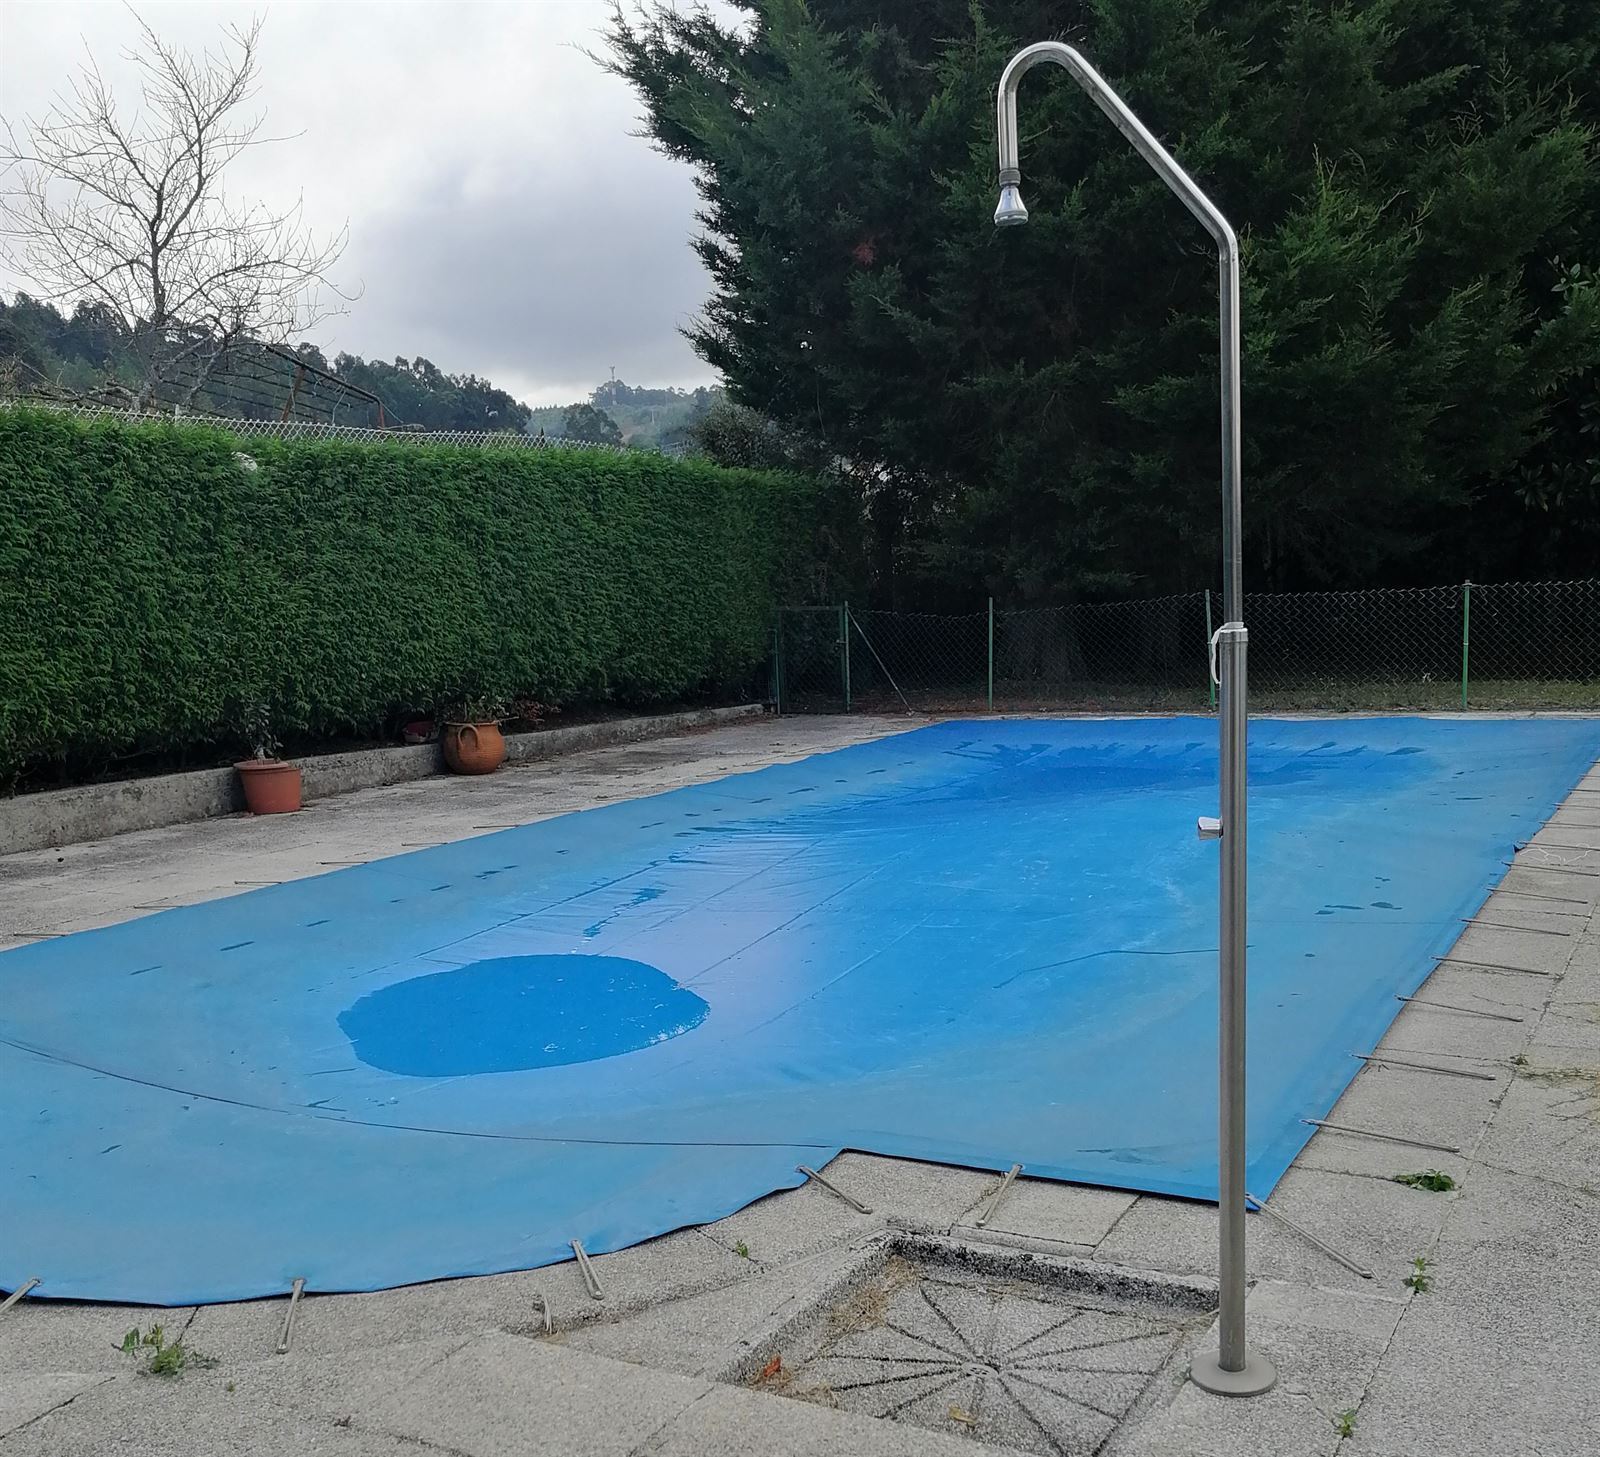 Impermeabilización de piscinas: lámina armada y cobertores - Imagen 1